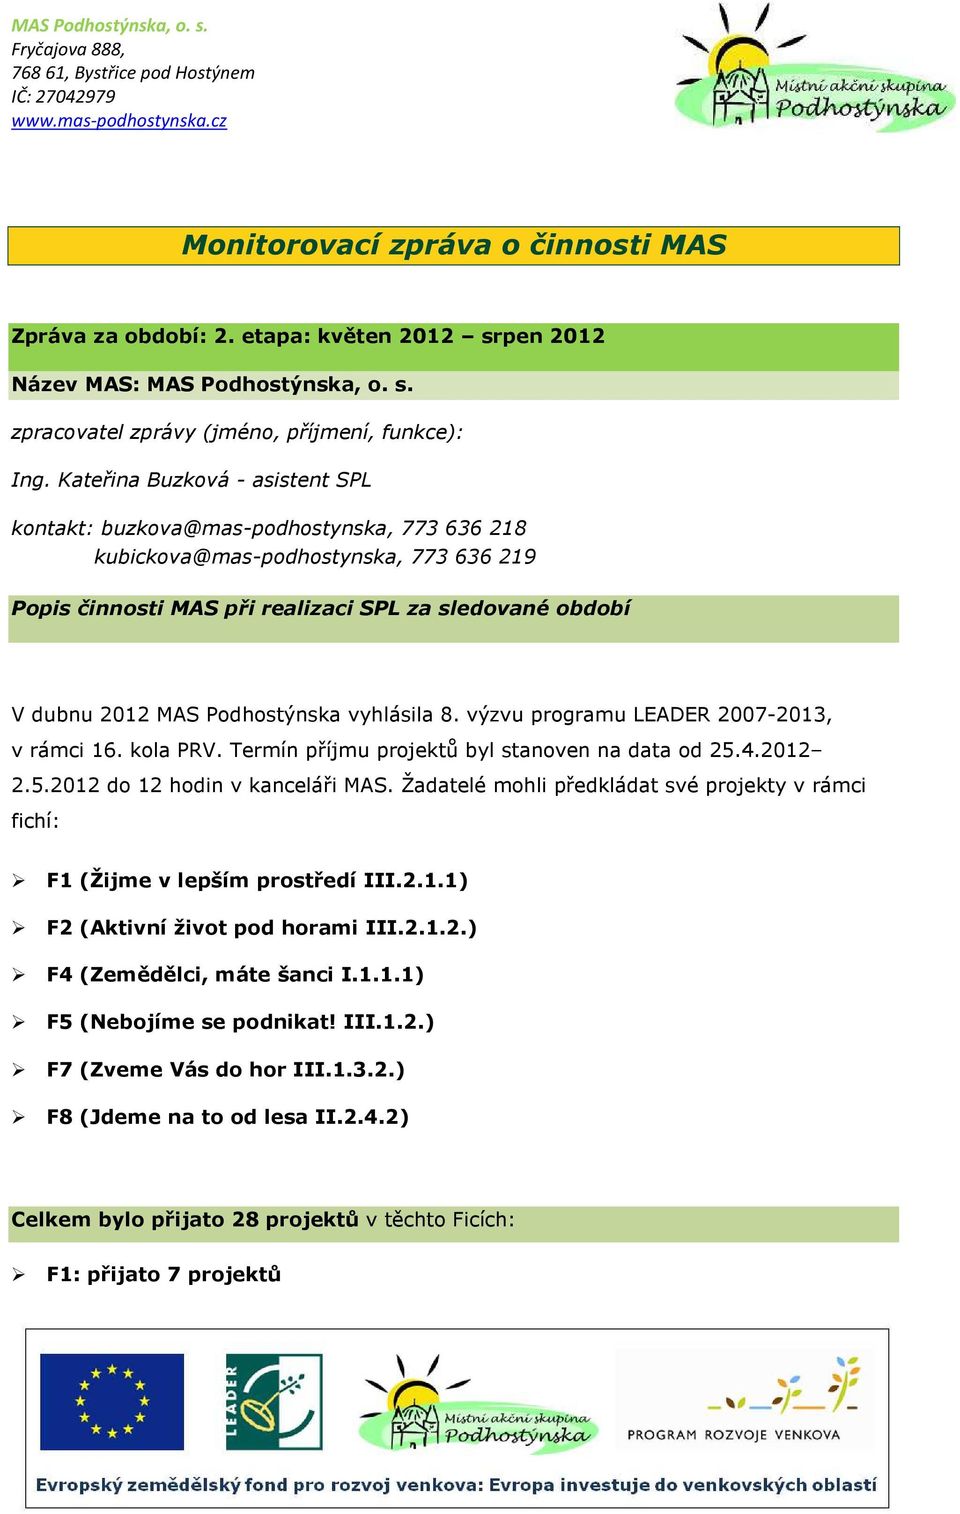 Podhostýnska vyhlásila 8. výzvu programu LEADER 2007-2013, v rámci 16. kola PRV. Termín příjmu projektů byl stanoven na data od 25.4.2012 2.5.2012 do 12 hodin v kanceláři MAS.